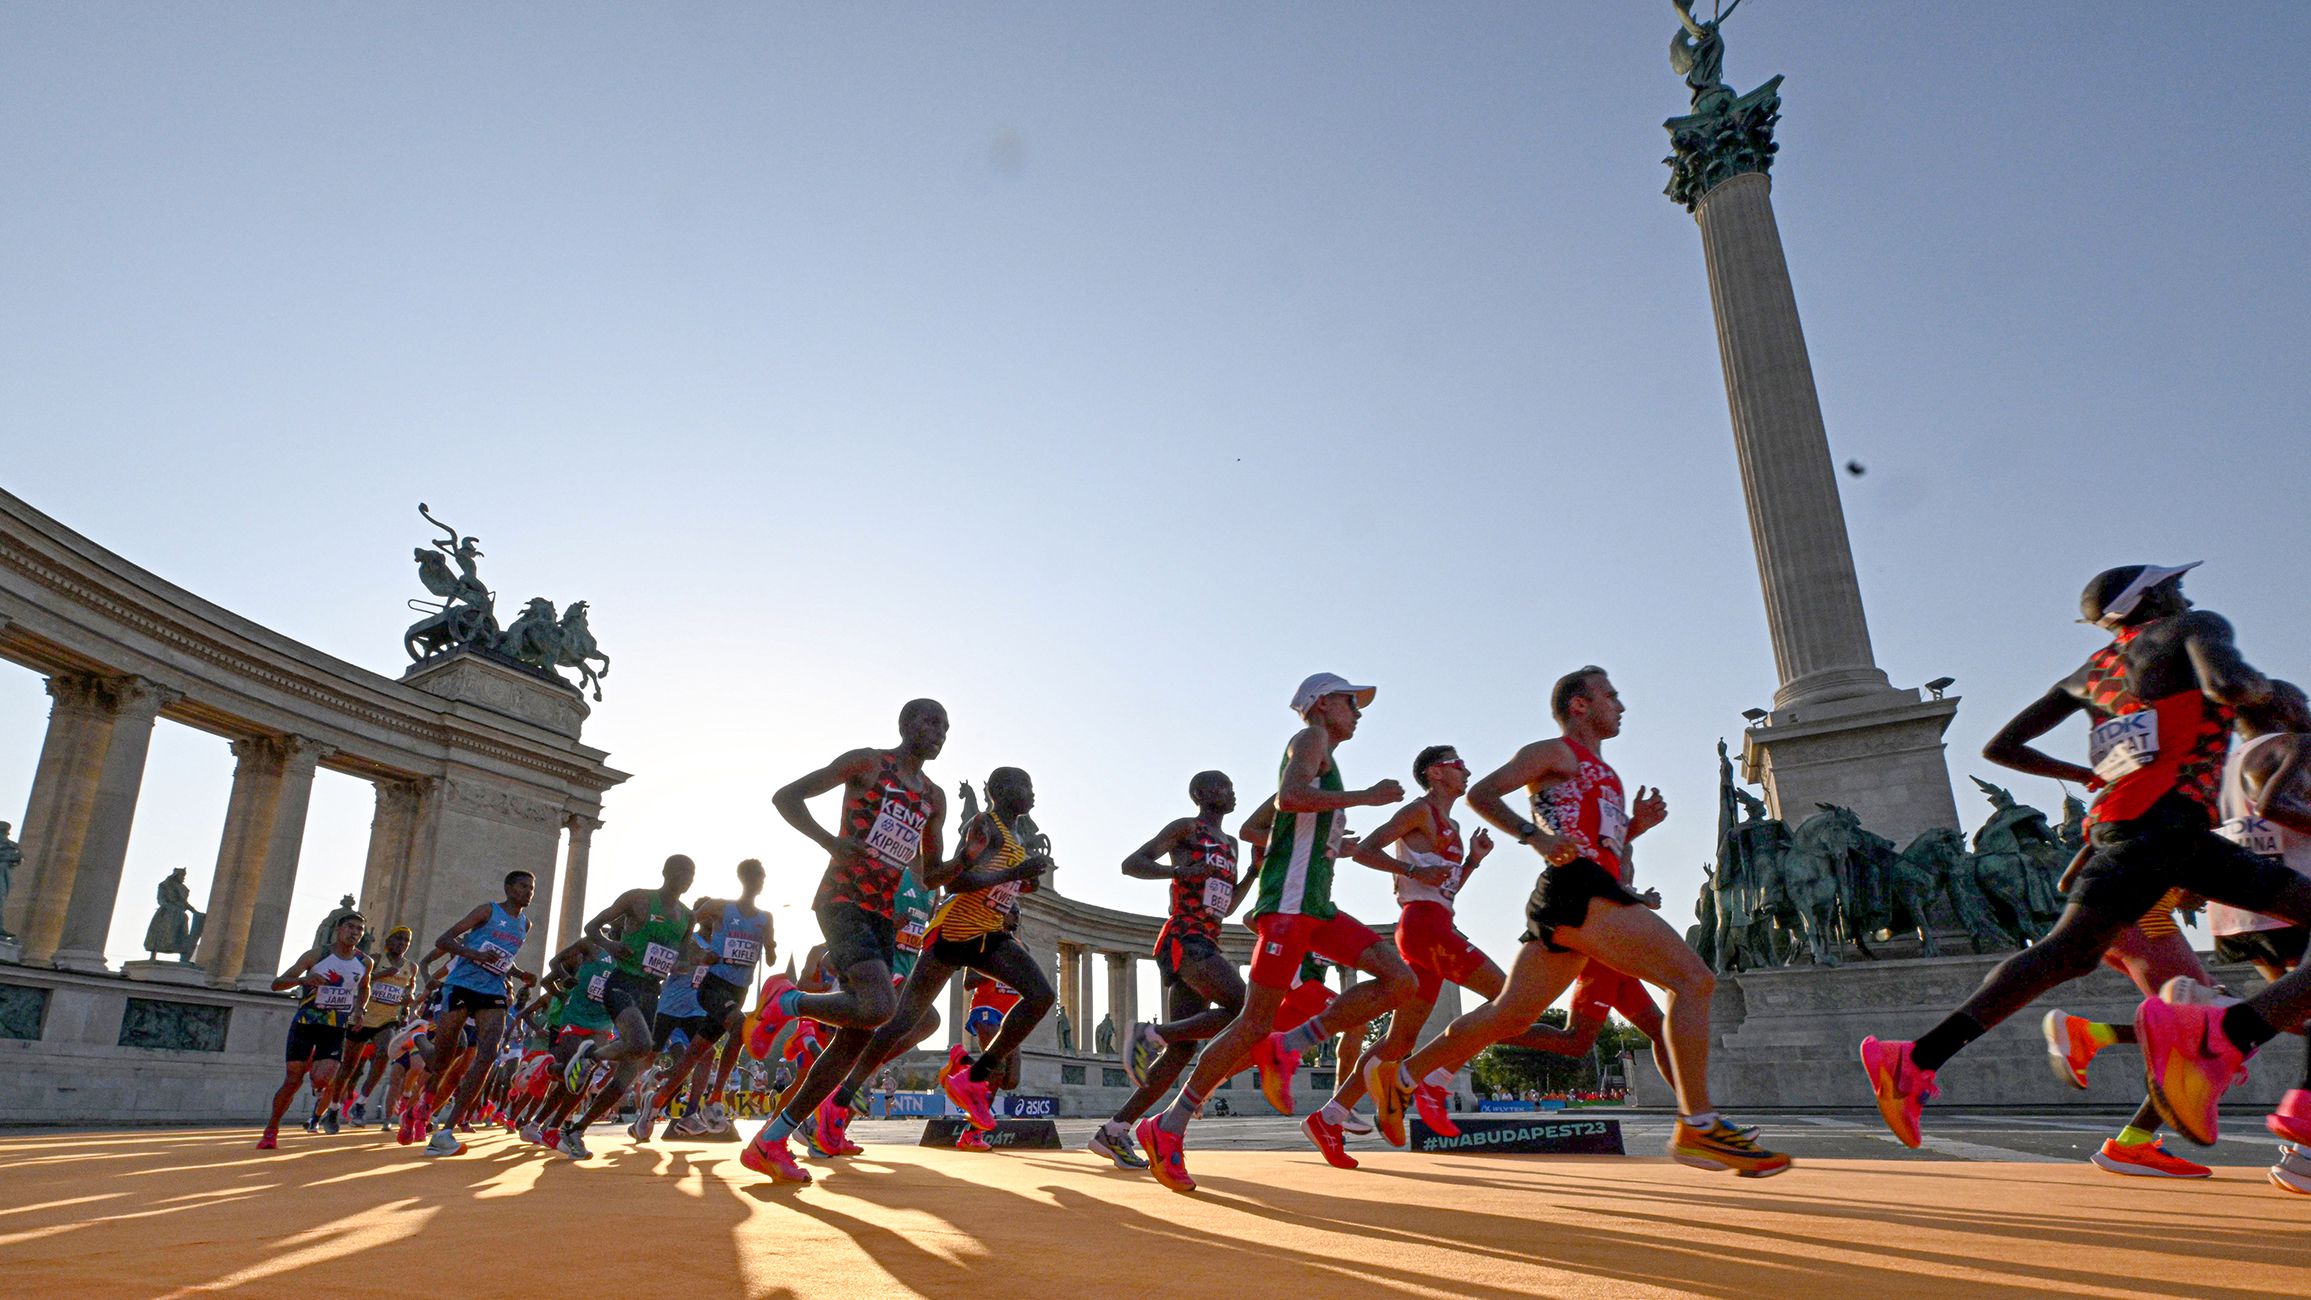 Galéria: ilyen volt a maratoni a csodás Budapesten